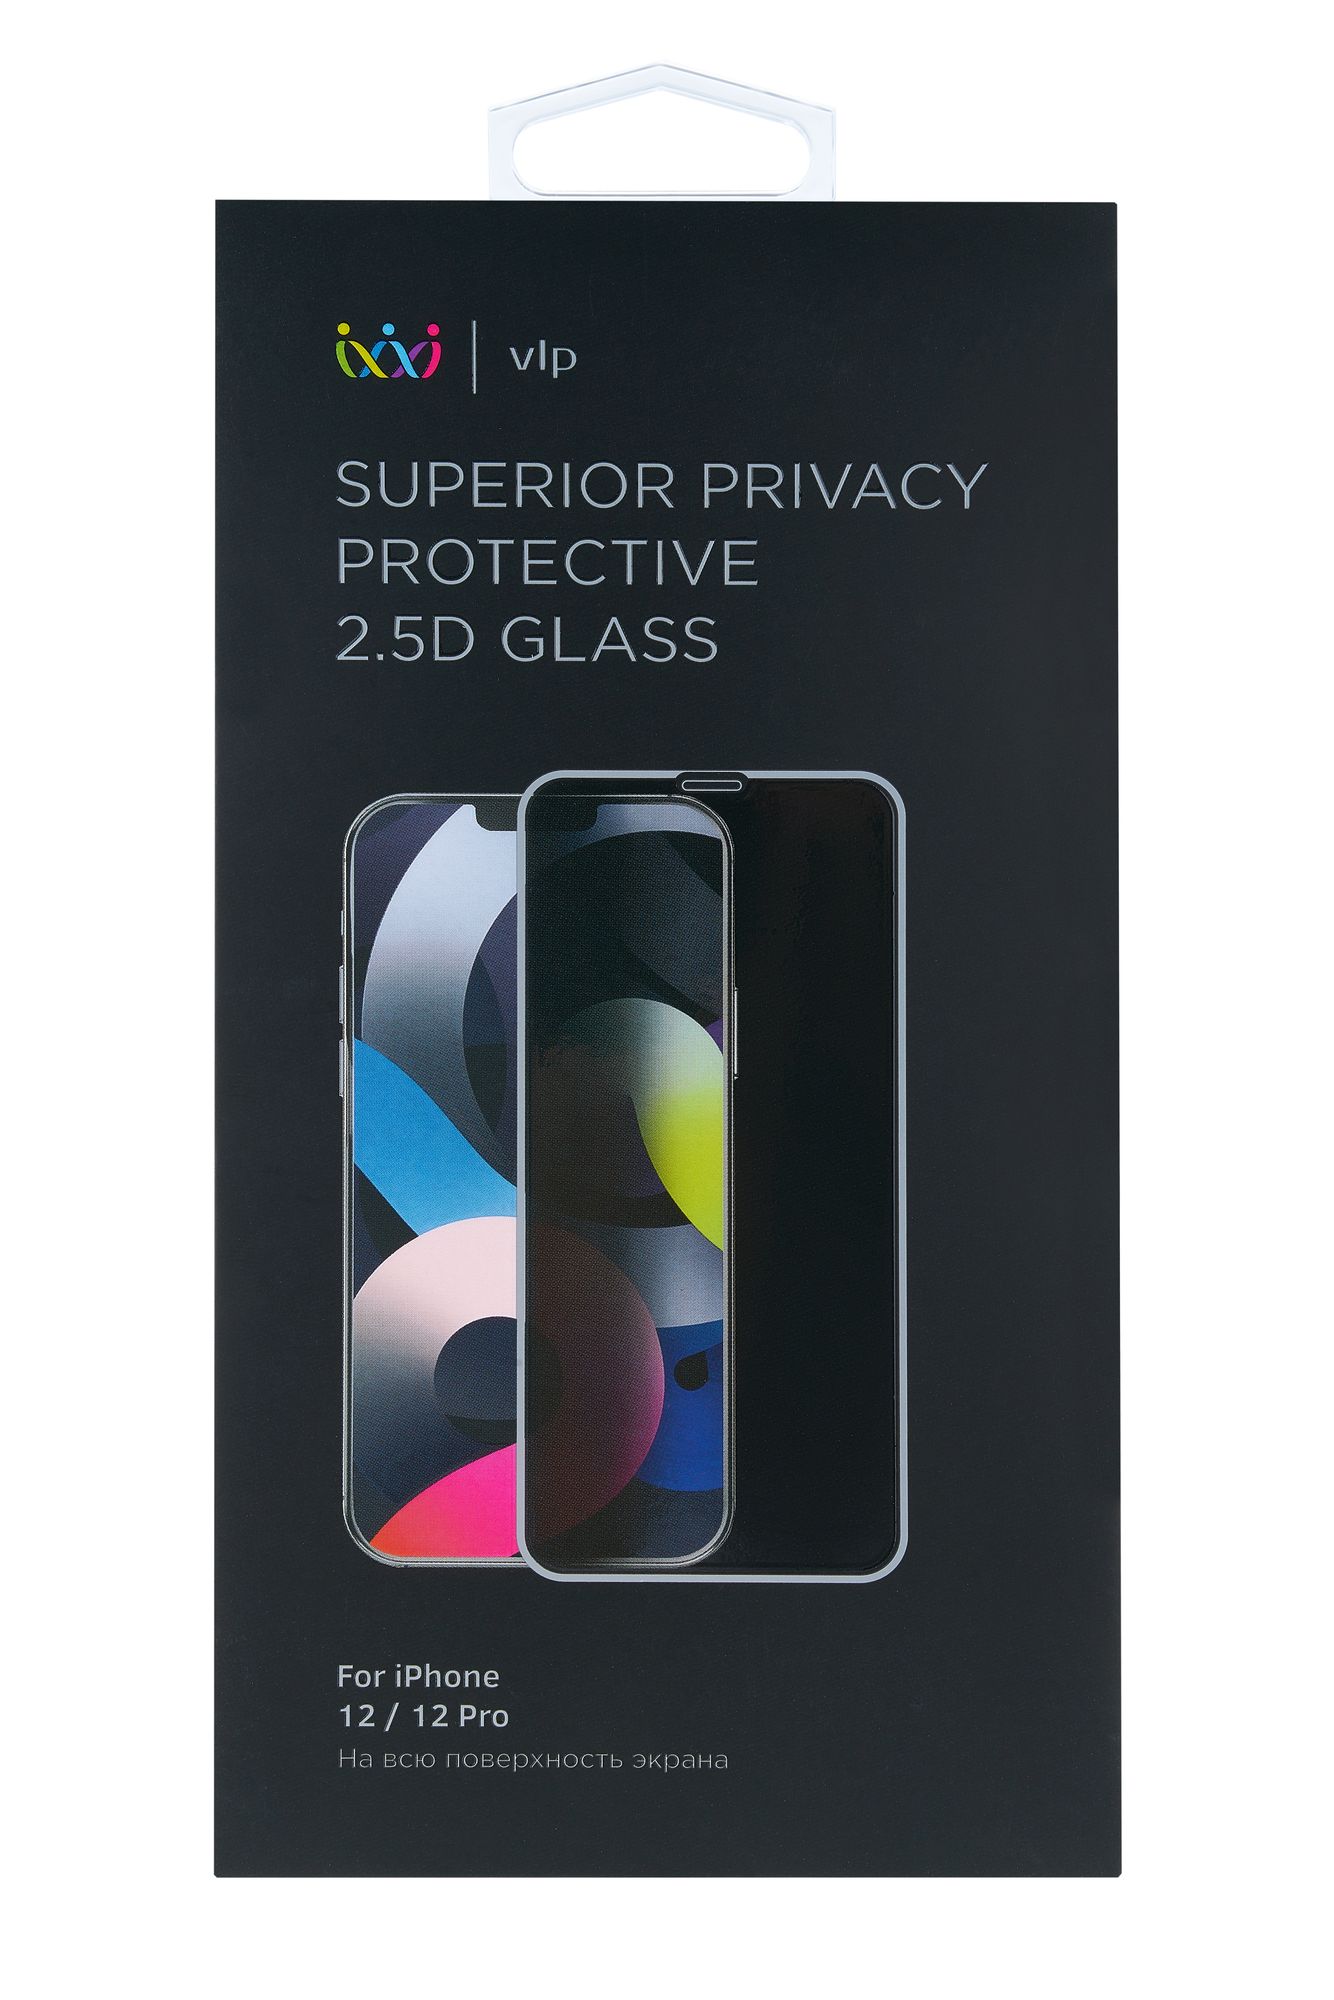 Стекло 2.5D защитное VLP Privacy для iPhone 12/12 Pro, черная рамка защитное стекло deppa privacy 3d iphone xr 11 черная рамка 62599